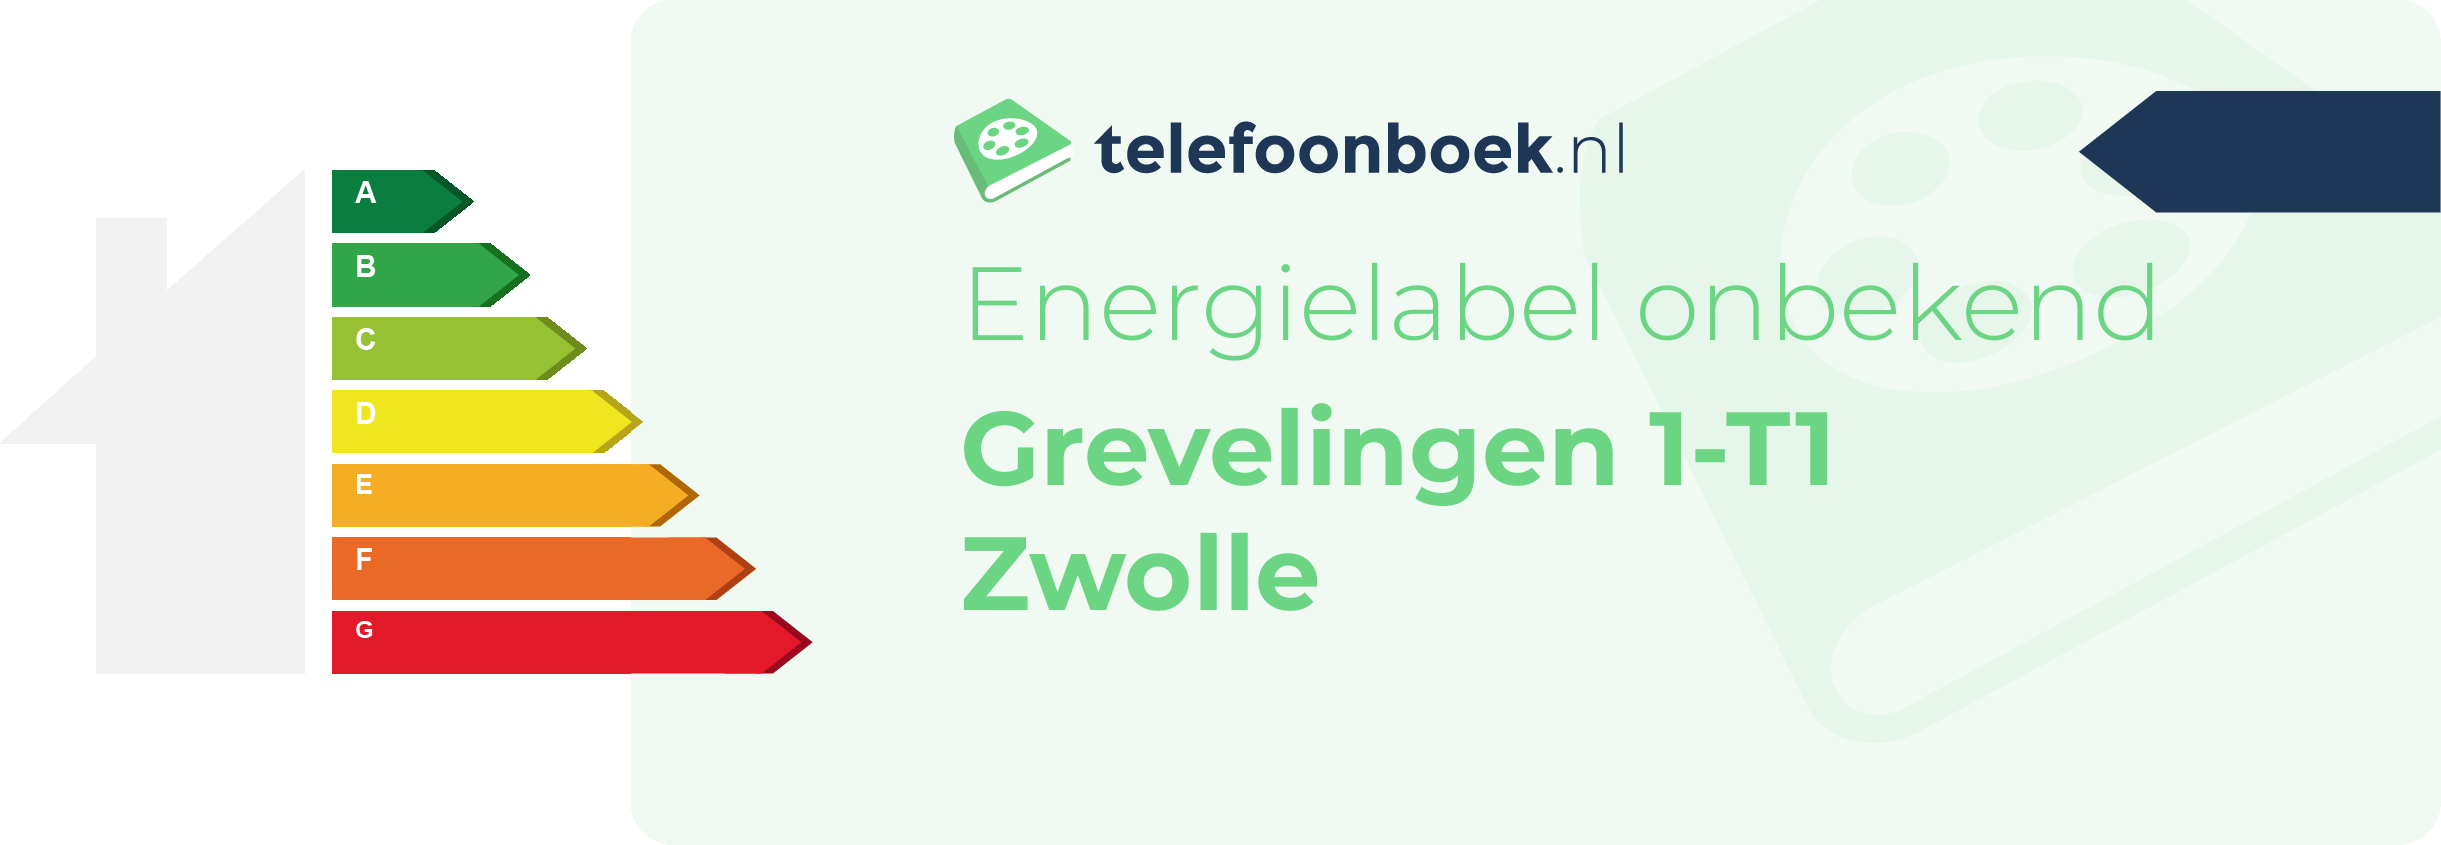 Energielabel Grevelingen 1-T1 Zwolle